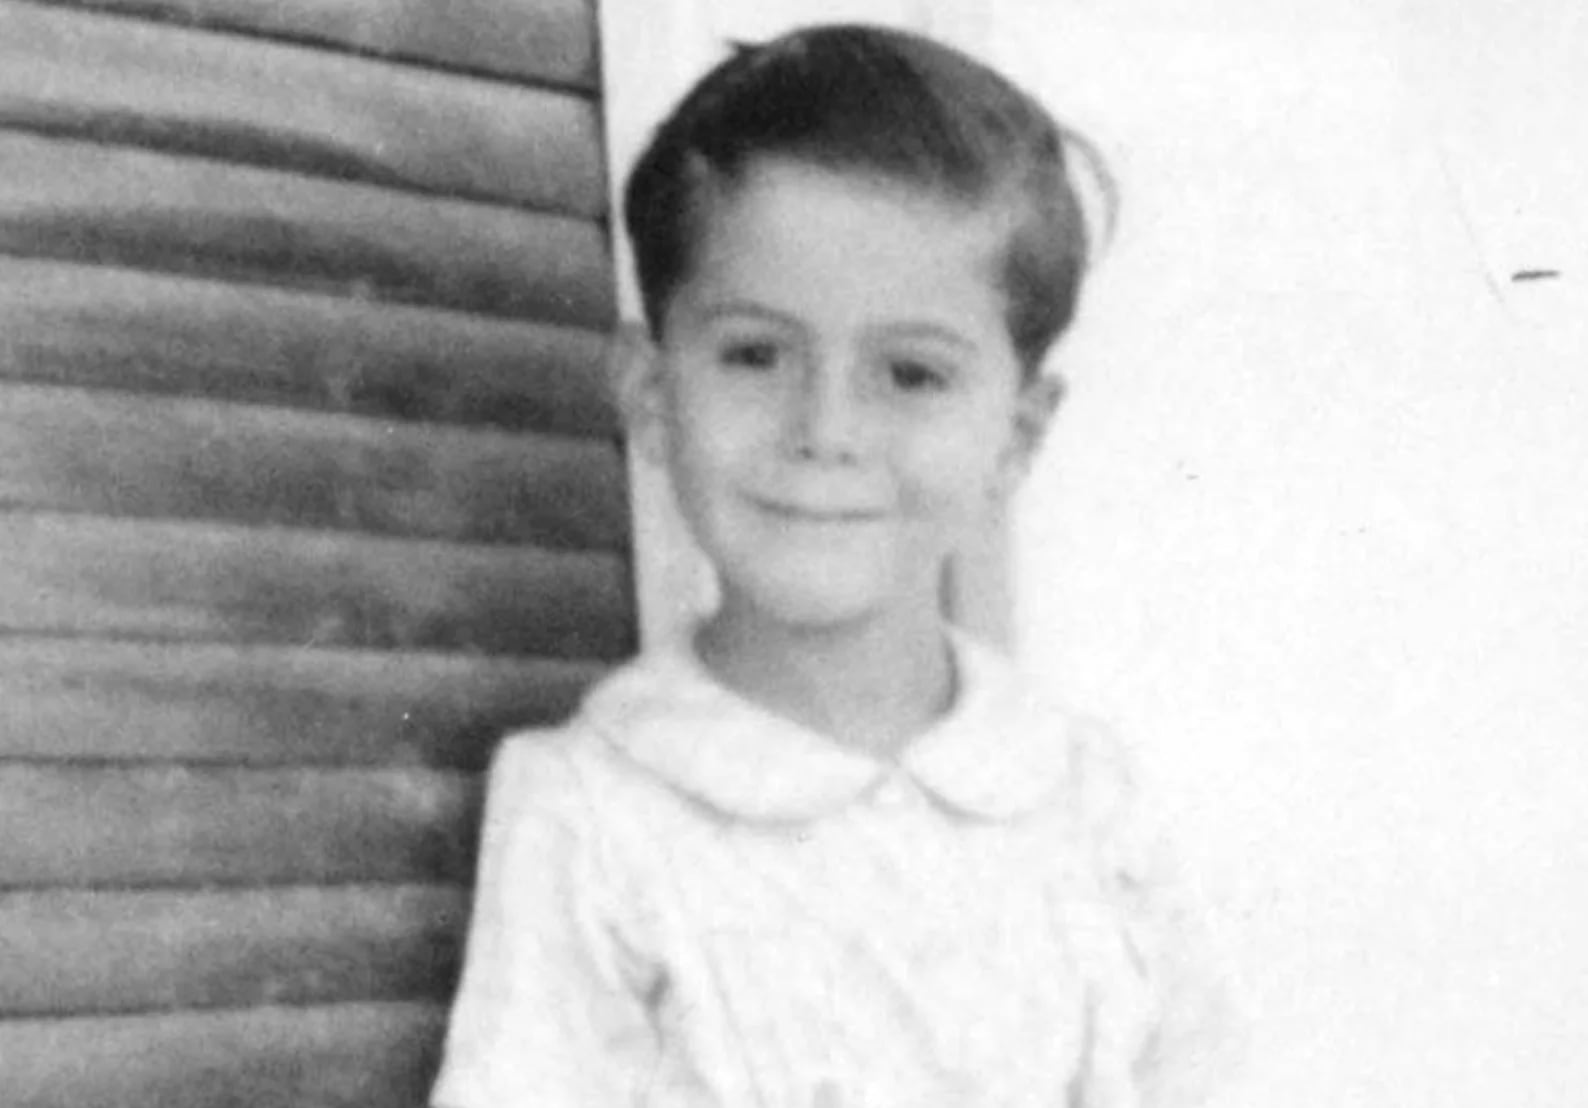 El pequeño Eric Ángel antes de la guerra; fue gaseado en Auschwitz a los nueve años. (Yad Vashem)